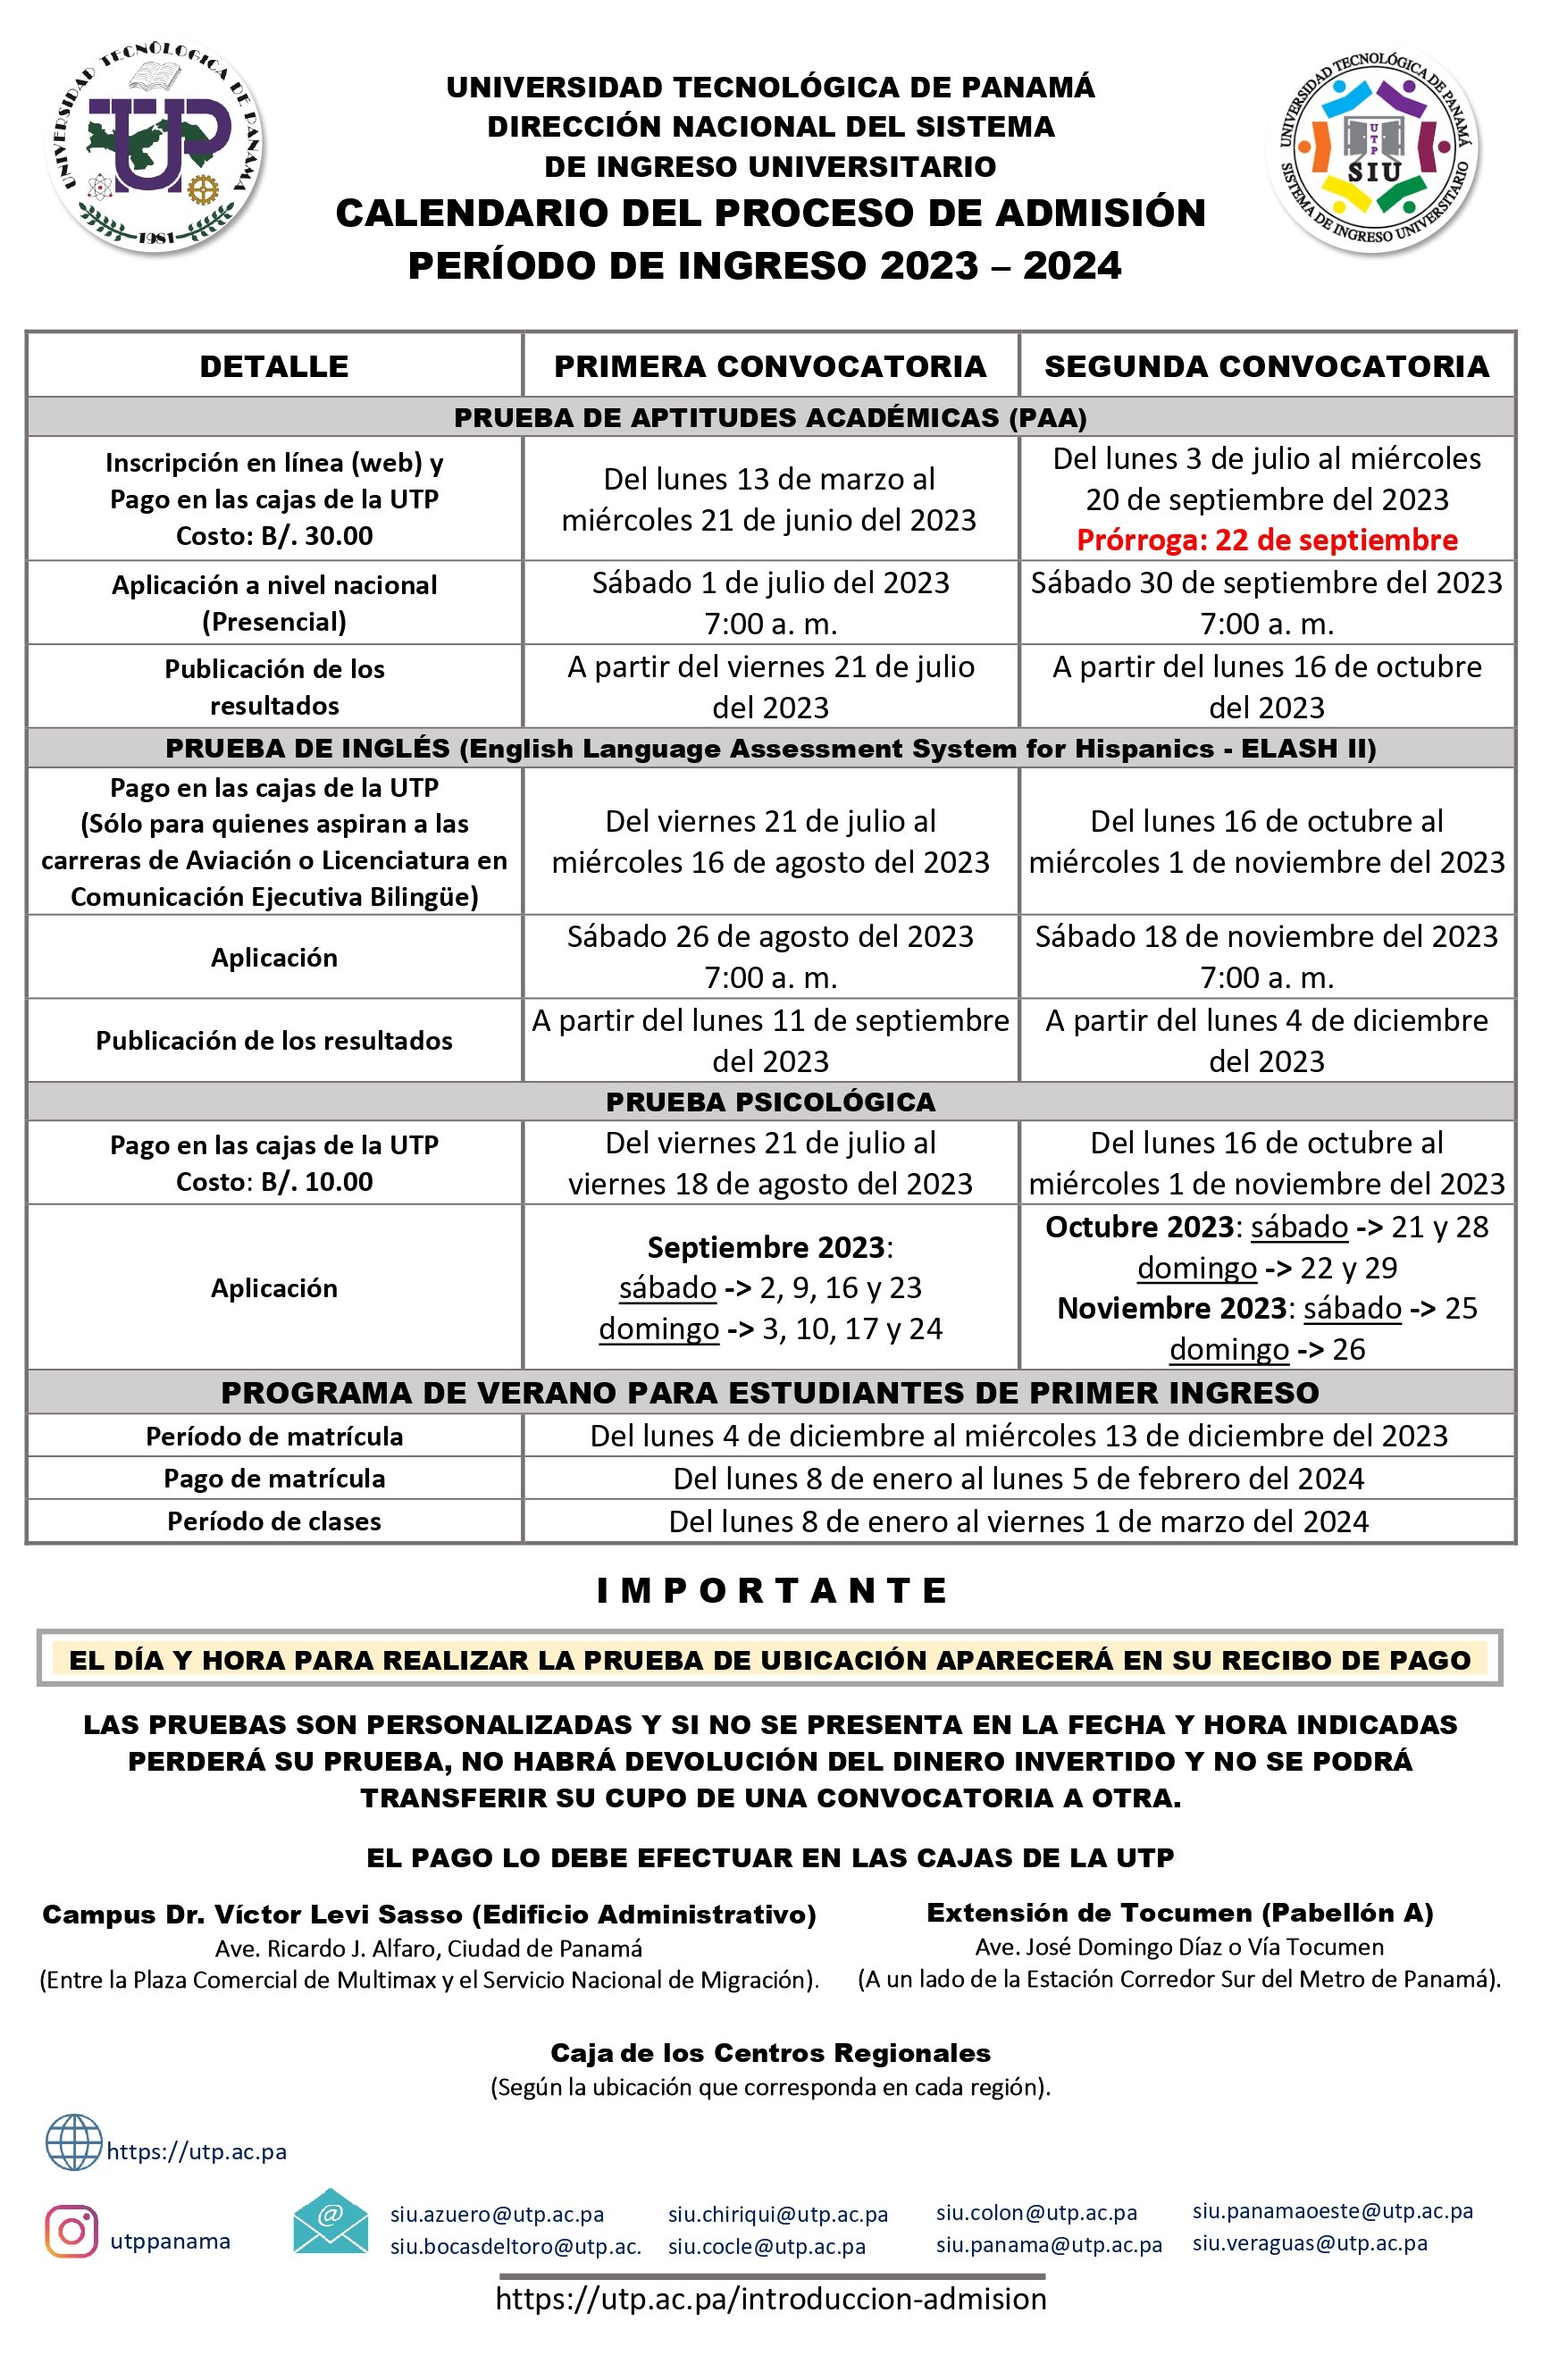 Calendario del Proceso de Admisión Universidad Tecnológica de Panamá